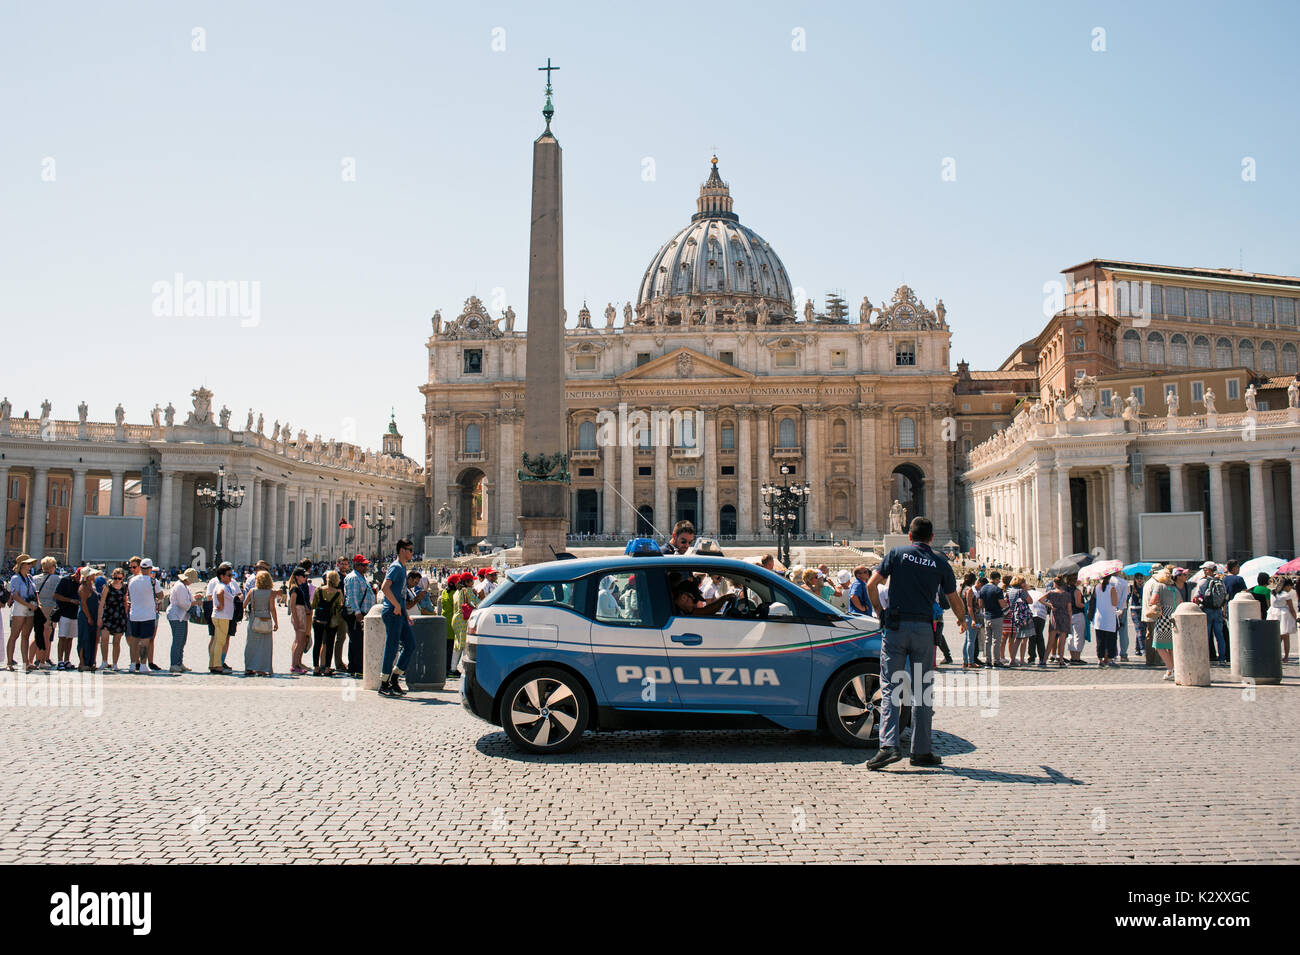 Roma, Italia, 2017 - Polizia auto accanto alla chiesa di San Pietro Foto Stock